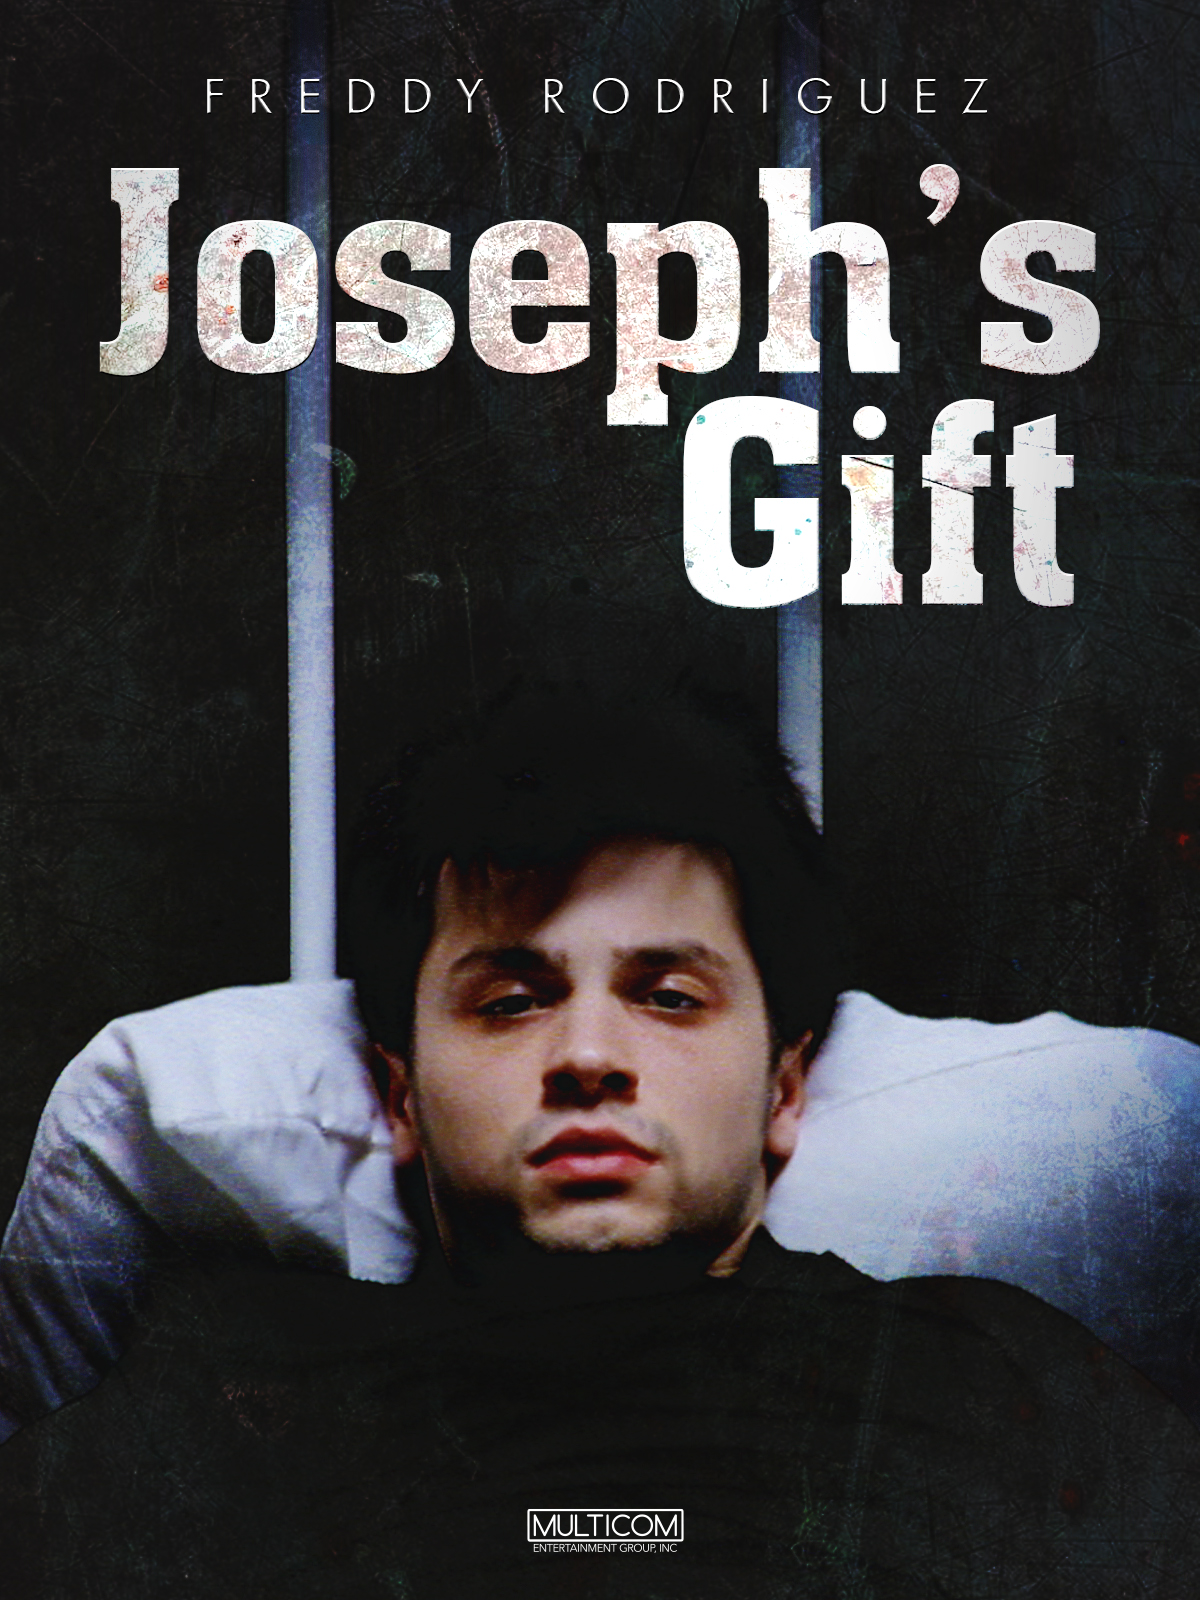 Joseph's Gift (1999) Screenshot 5 